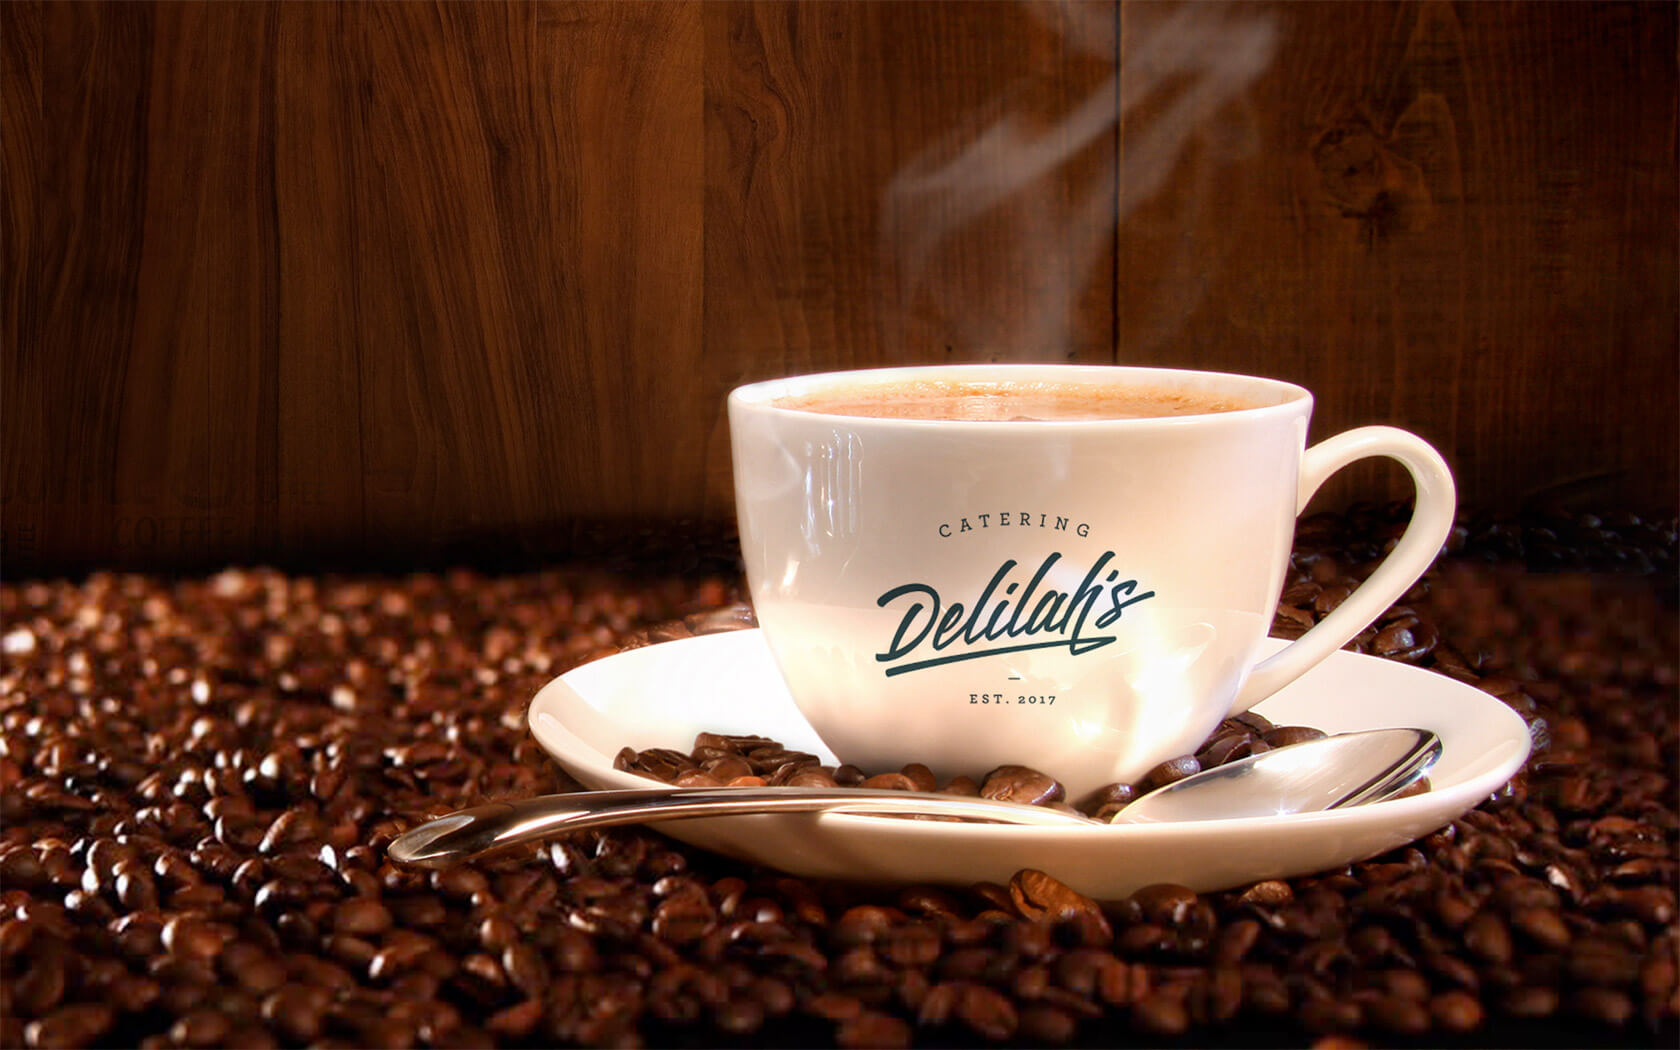 Delilah’s. Ceramic cup branding